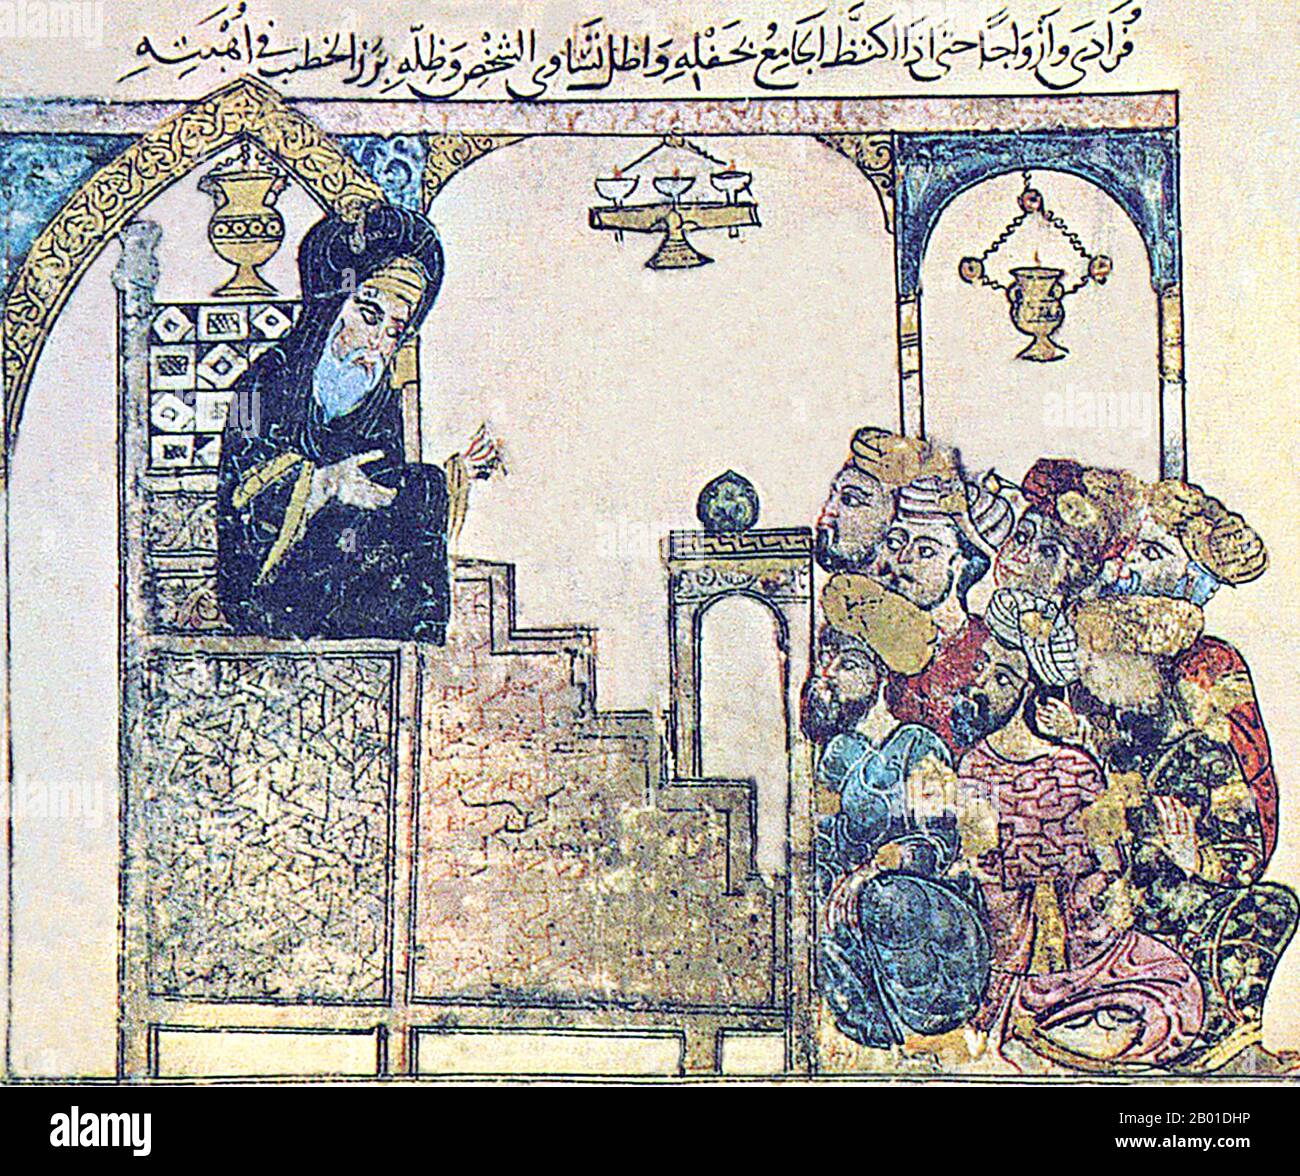 Iraq/Arabia: Una khutbah o un sermone consegnato dal minbar o dal pulpito di una moschea. Miniatura di Yahya ibn Mahmud al-Wasiti (13th ° secolo), 1237 CE. Yahyâ ibn Mahmûd al-Wâsitî è stato un artista arabo islamico del 13th° secolo. Al-Wasiti è nato a Wasit, nel sud dell'Iraq. Fu notato per le sue illustrazioni del Maqam di al-Hariri. Maqāma (letteralmente 'assemblee') sono un genere letterario arabo (originariamente) di prosa rima con intervalli di poesia in cui lo stravagamento retorico è cospicuo. Si dice che l'autore del 10th° secolo Badī' al-Zaman al-Hamadhāni abbia inventato la forma. Foto Stock